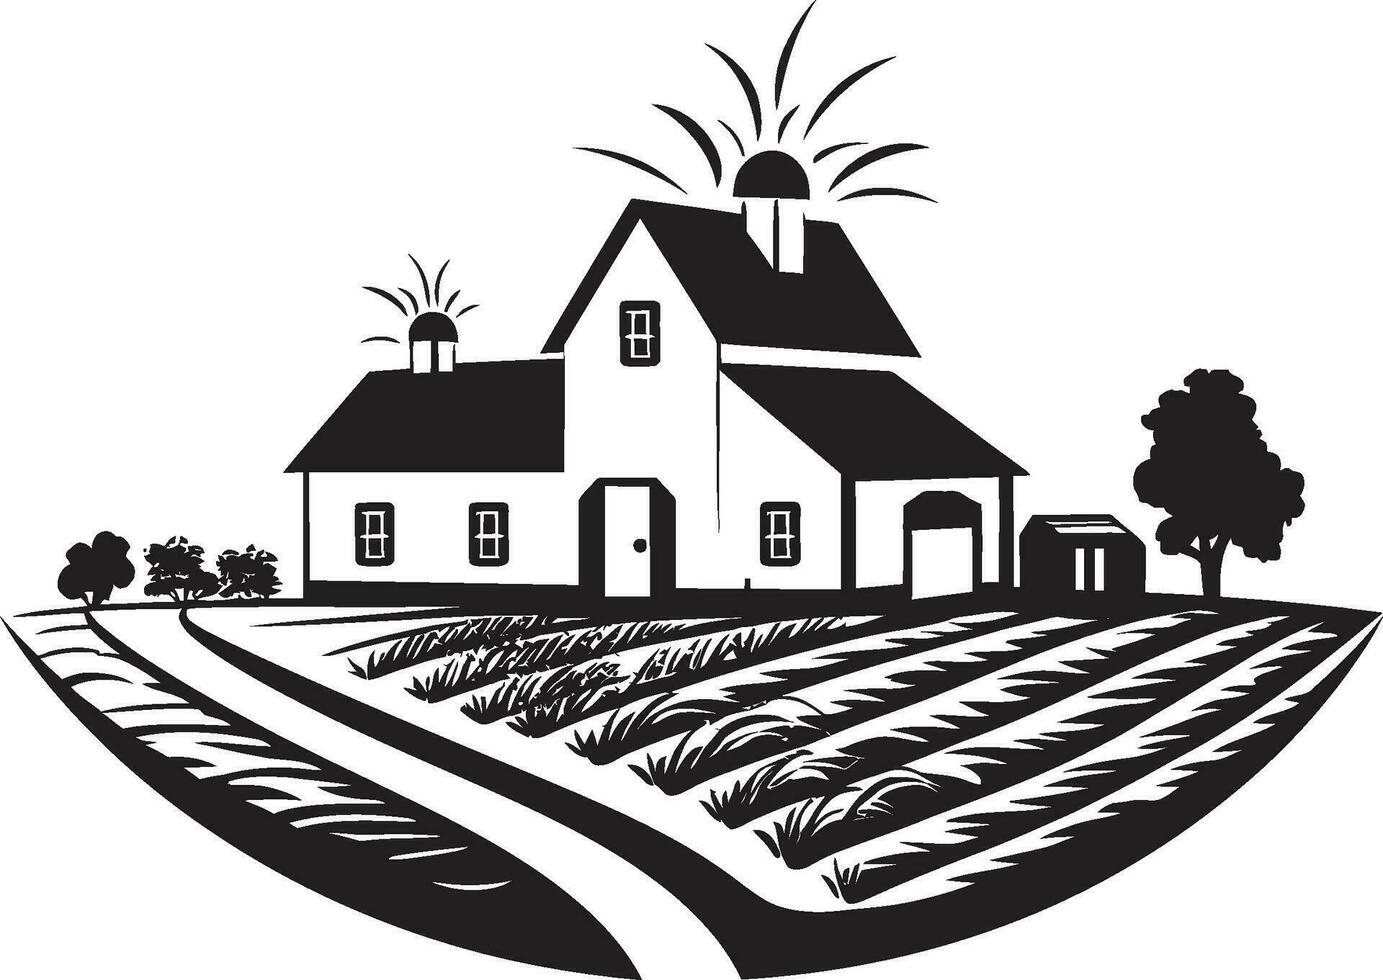 rustique ferme demeure marque Les agriculteurs maison vecteur logo rural habitation impression ferme conception dans vecteur icône